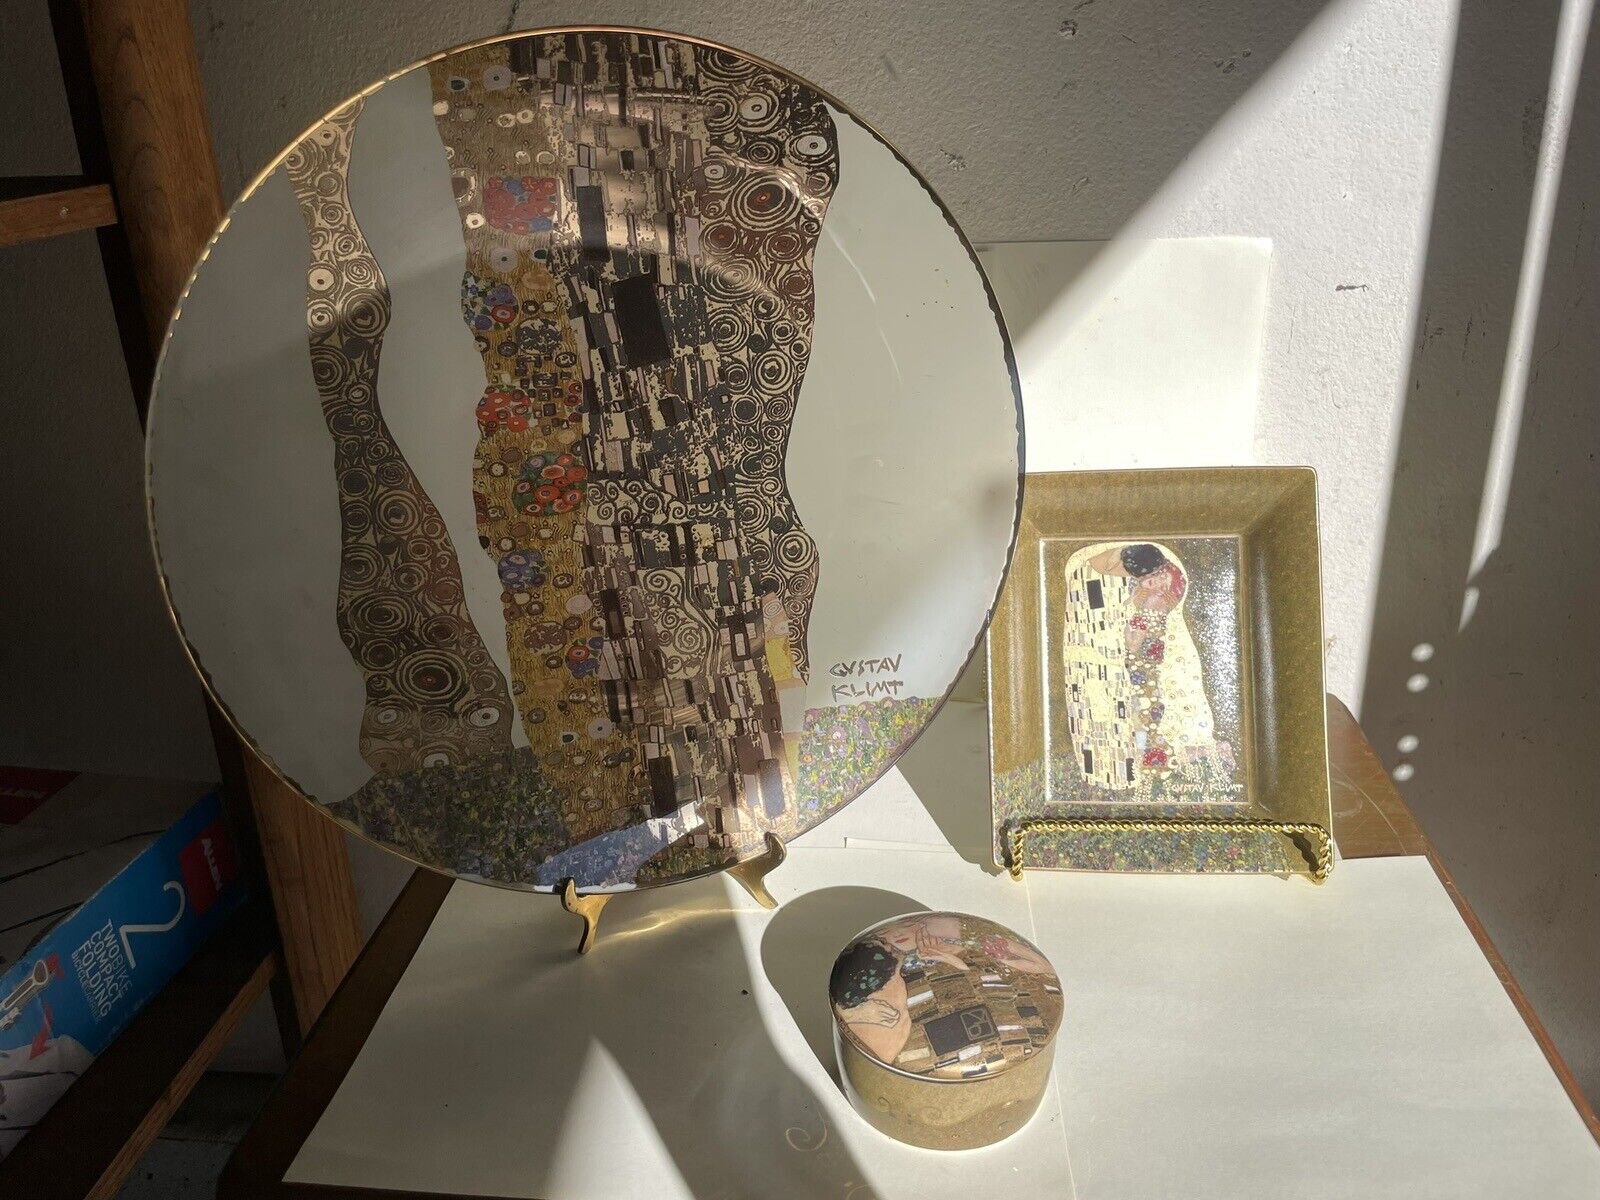 Vtg Set Of 3 Goebel Artis Orbis 14” Glass Platter Gustav Klimpt Hand Decorated